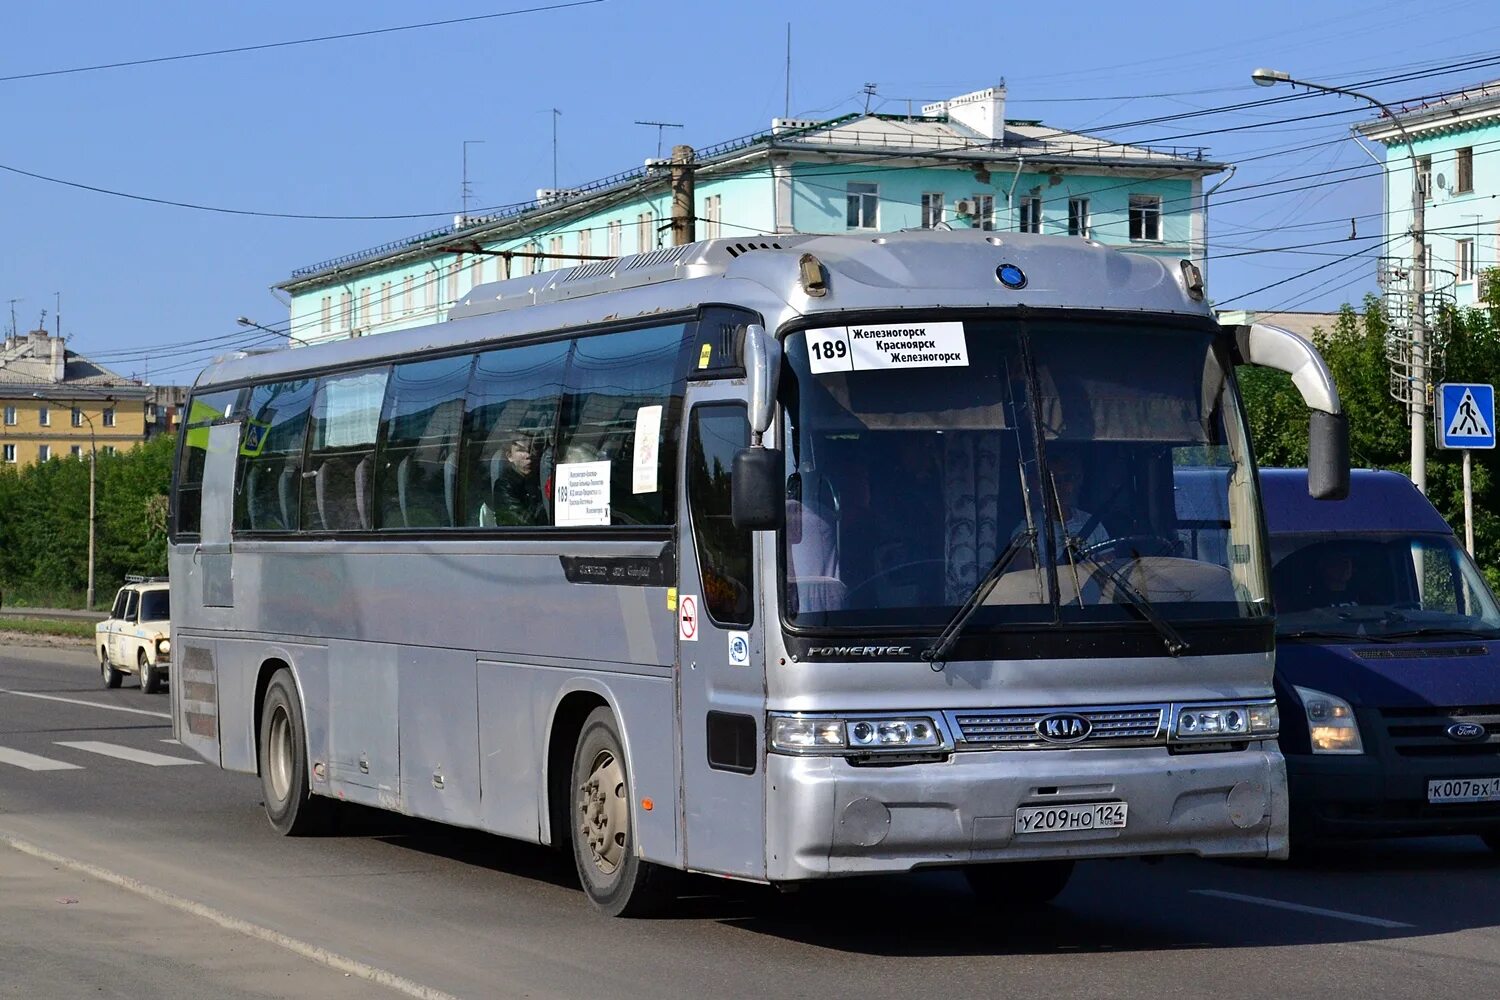 Kia Granbird 2015. 124 Автобус. Автобус 189 Железногорск Красноярск. Маршрут 189. Красноярск железногорск 189 купить